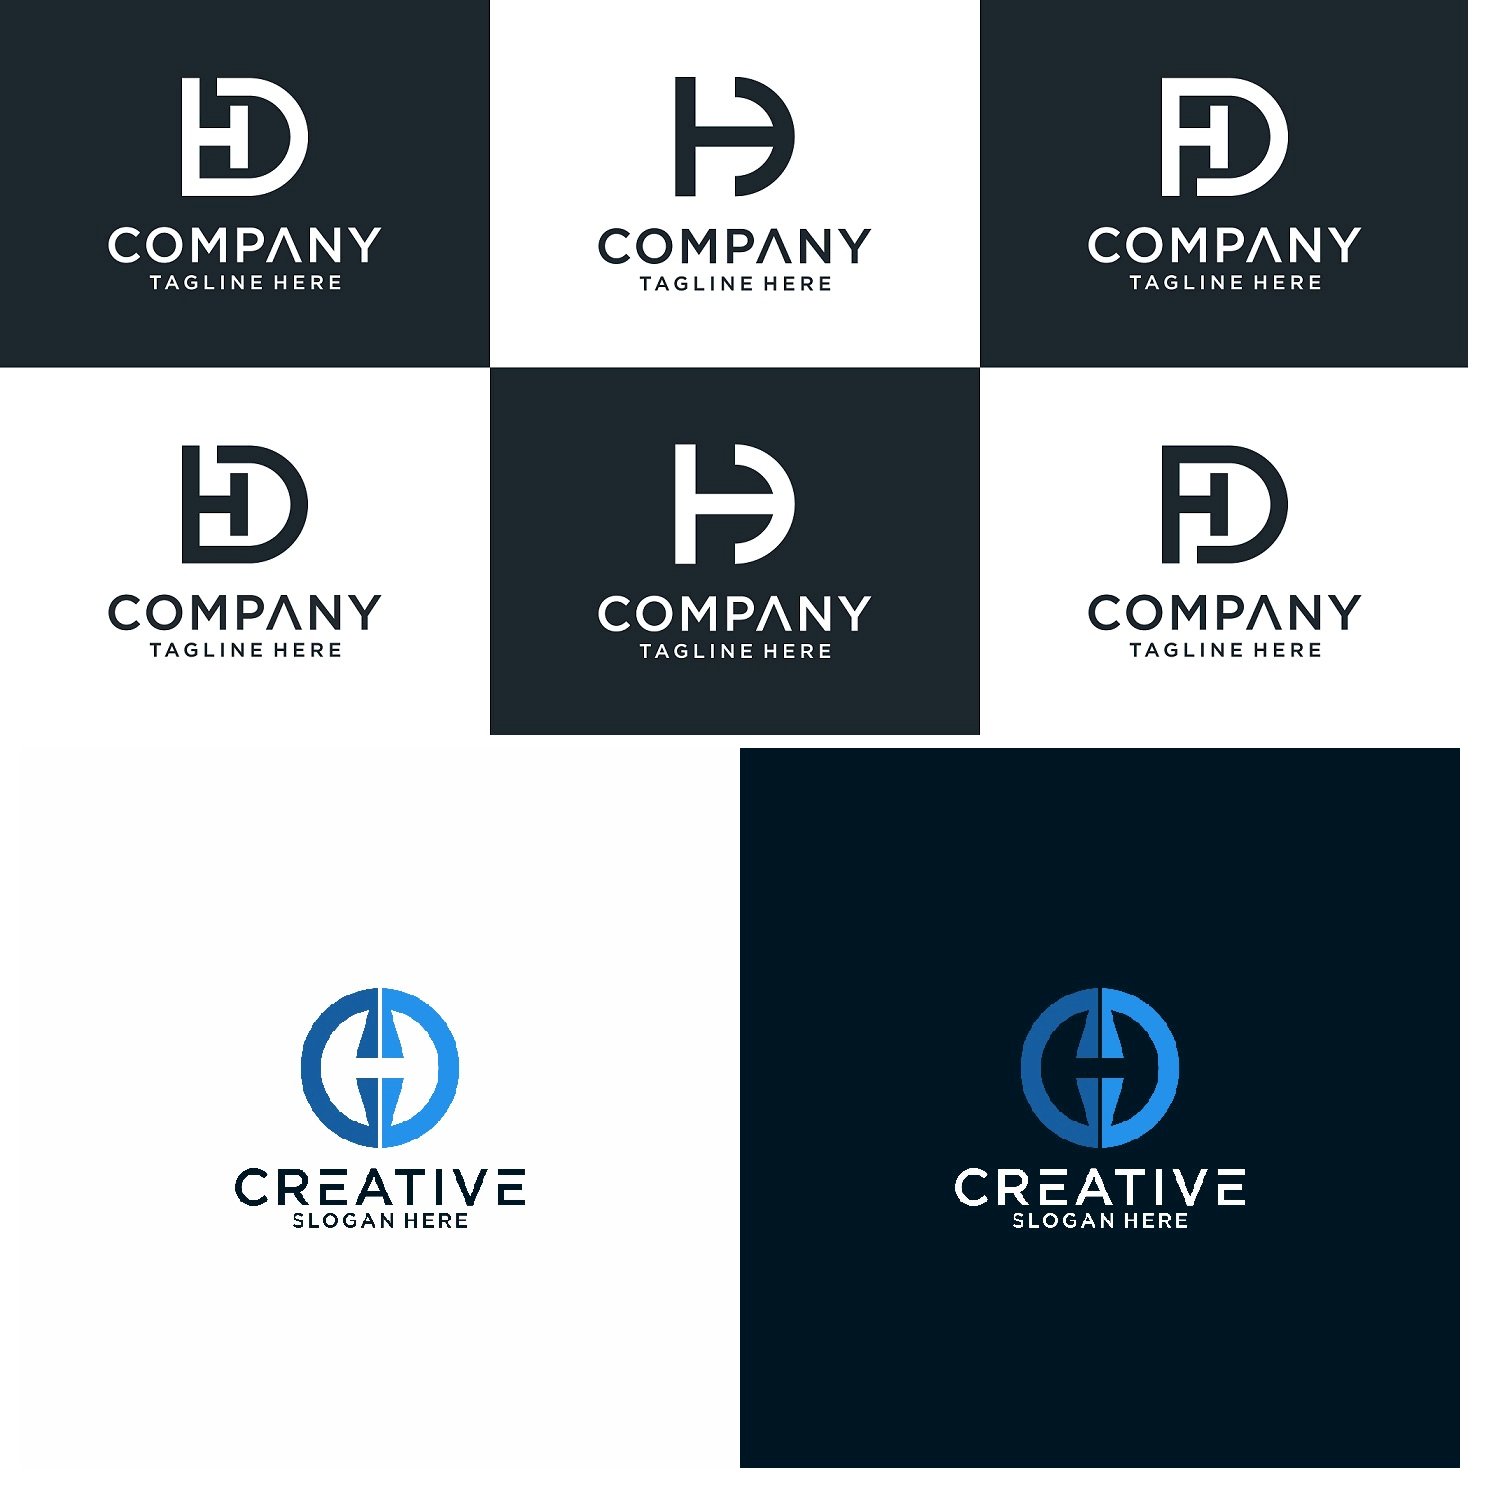 Logo chữ HD là của hãng nào?
